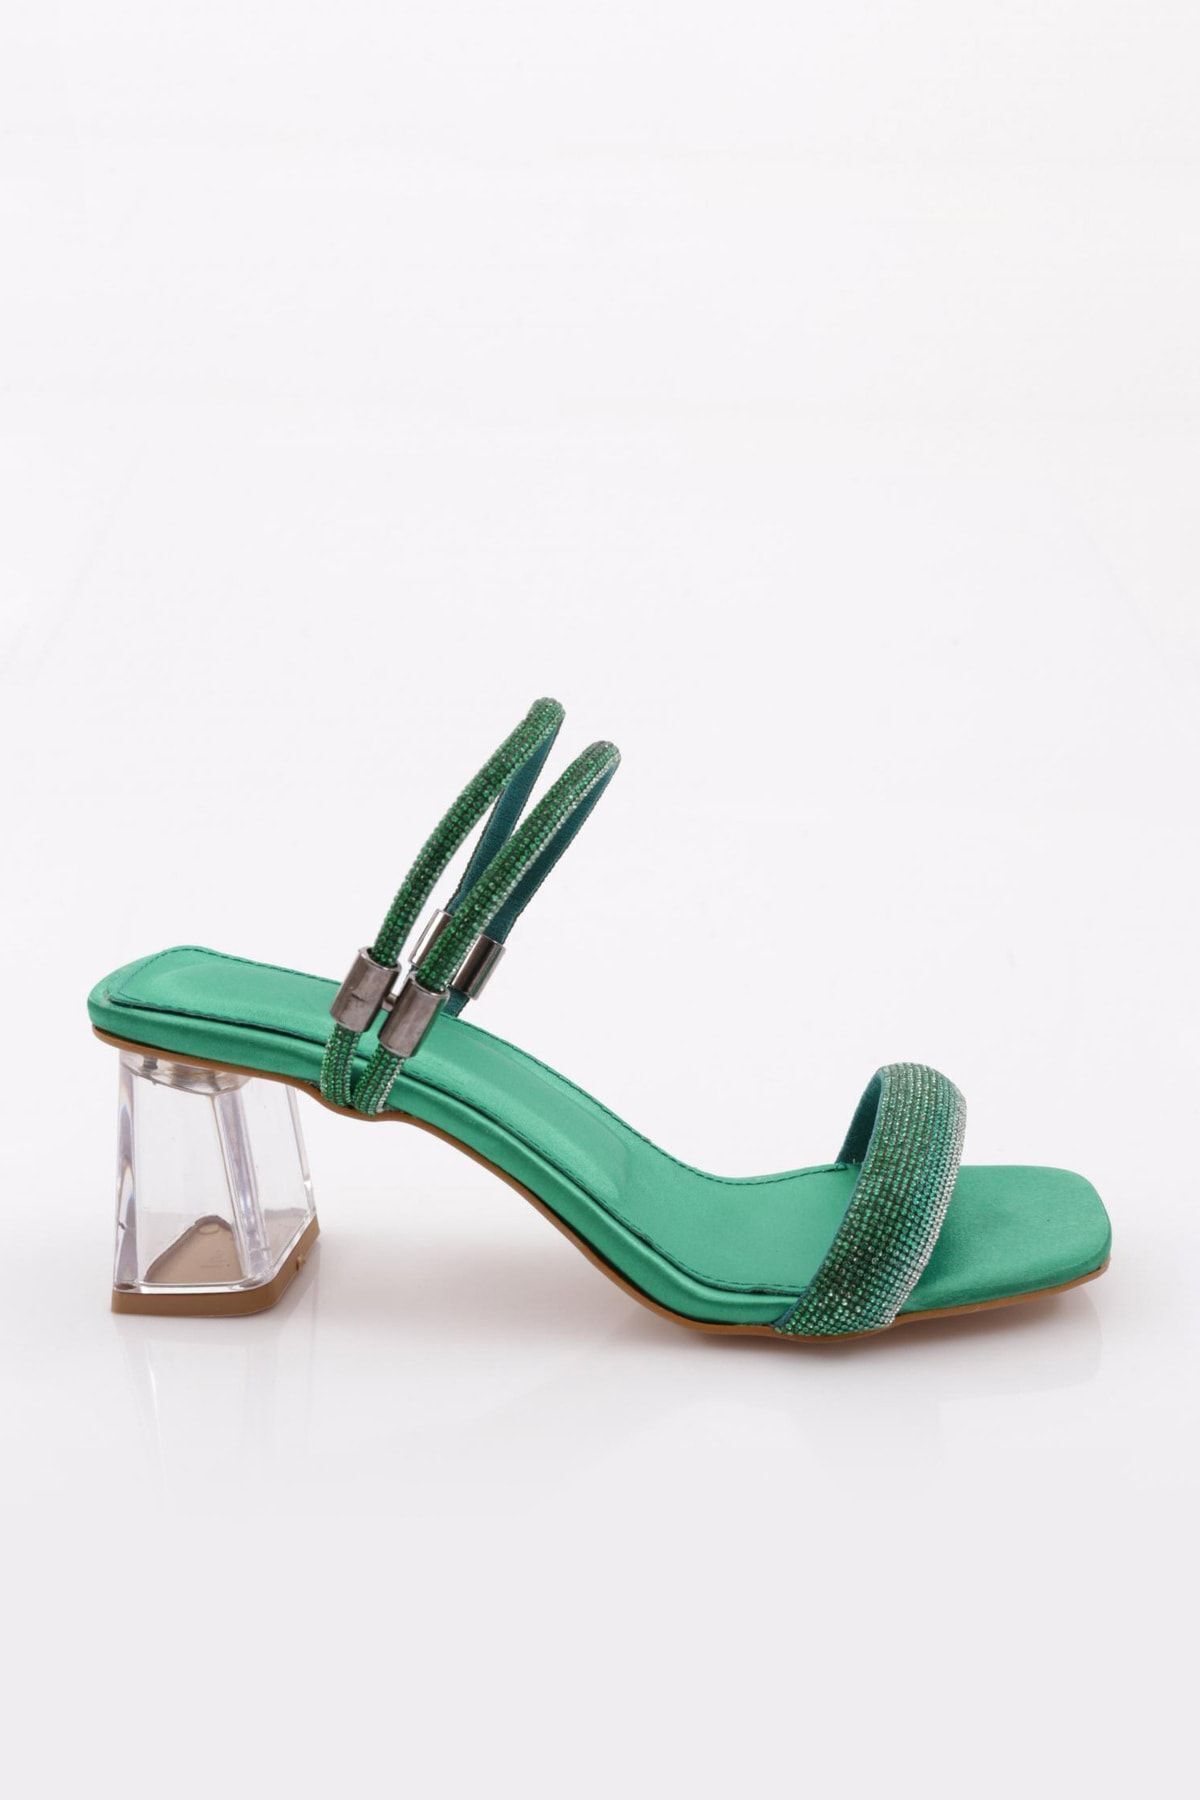 Dgn 901 Kadın Kare Burun Şeffaf Topuklu Sandalet Yeşil Saten